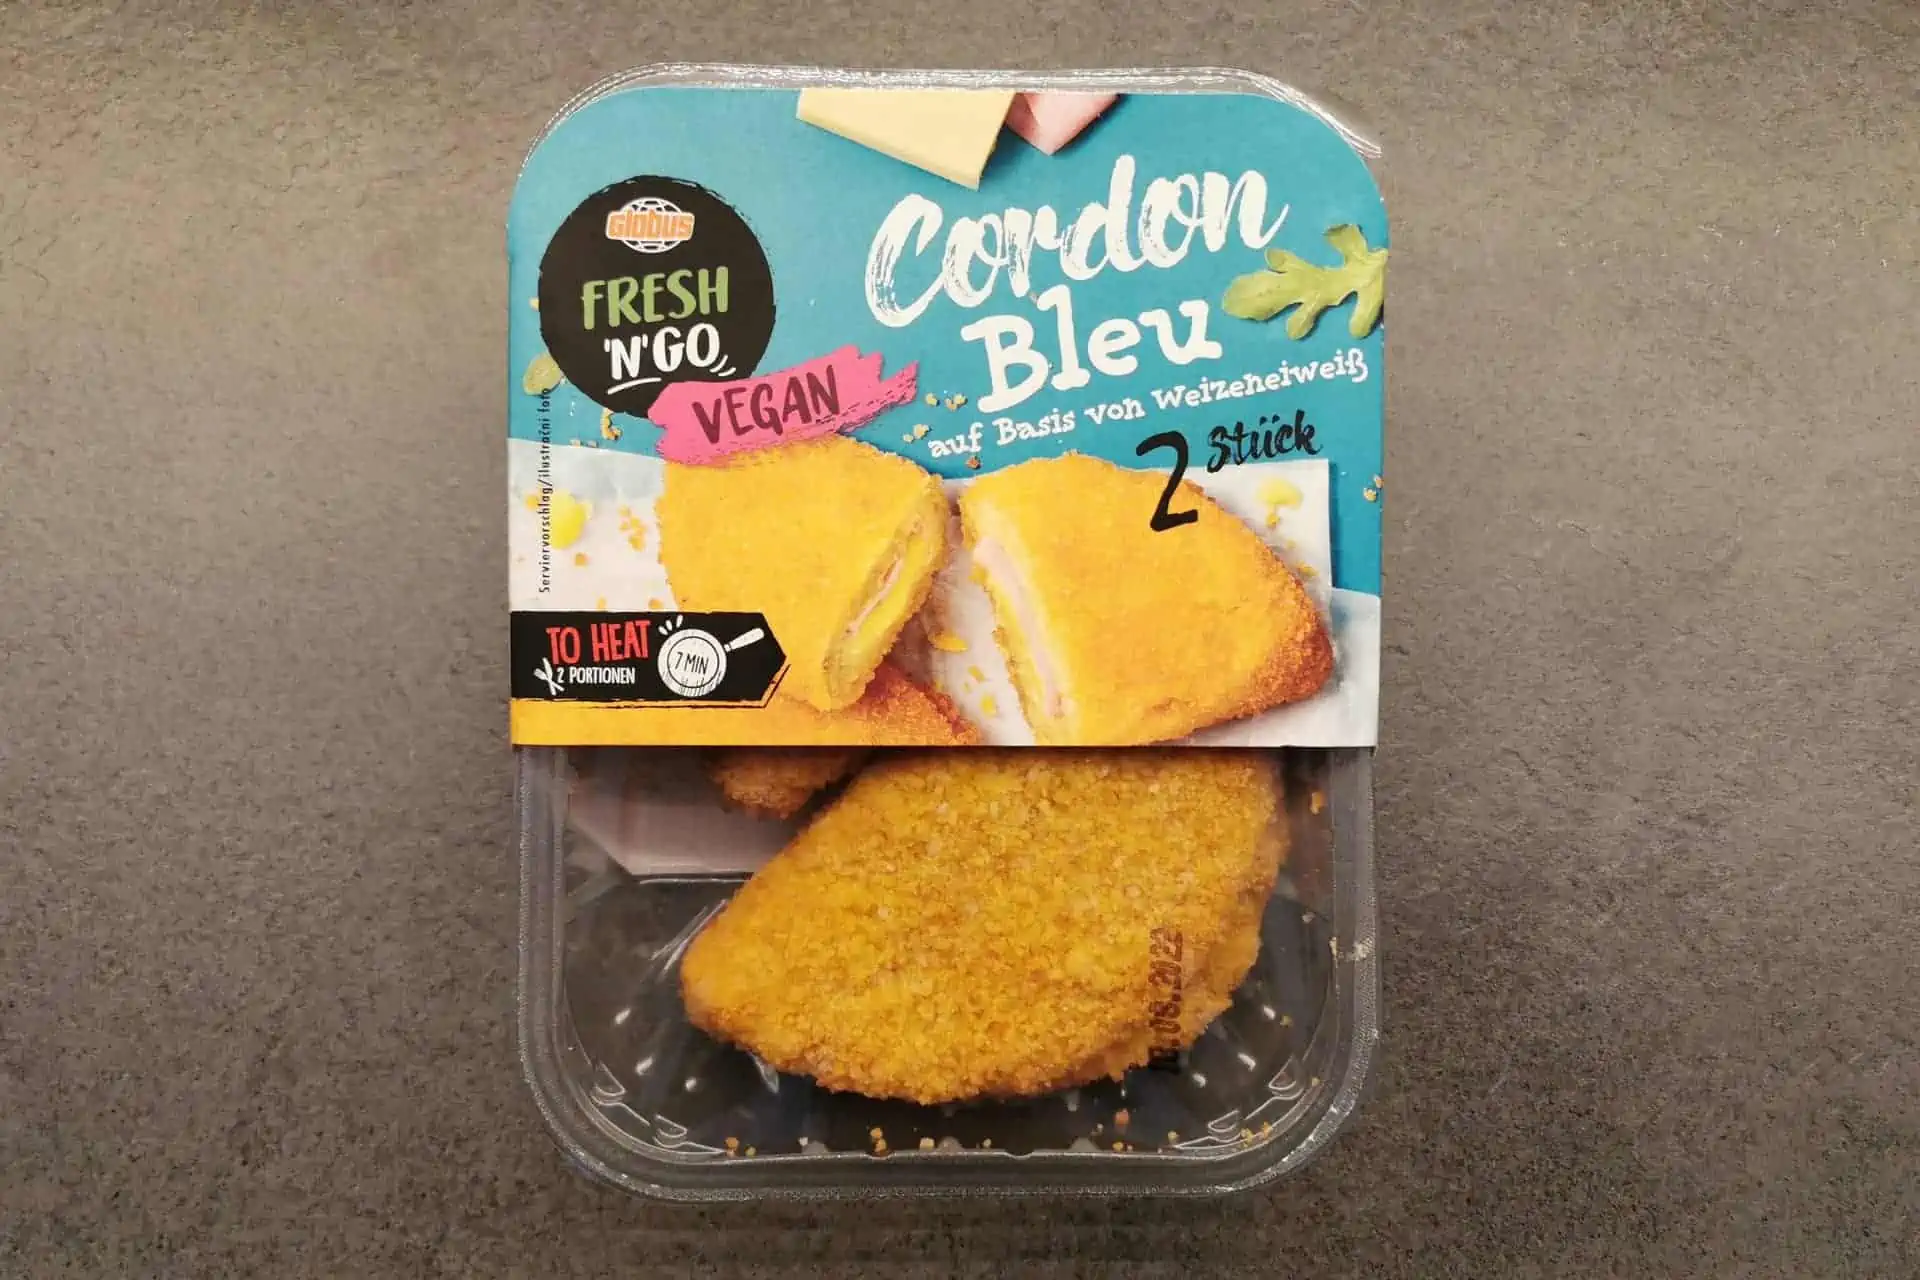 Globus Fresh 'n' go: Cordon Bleu Vegan